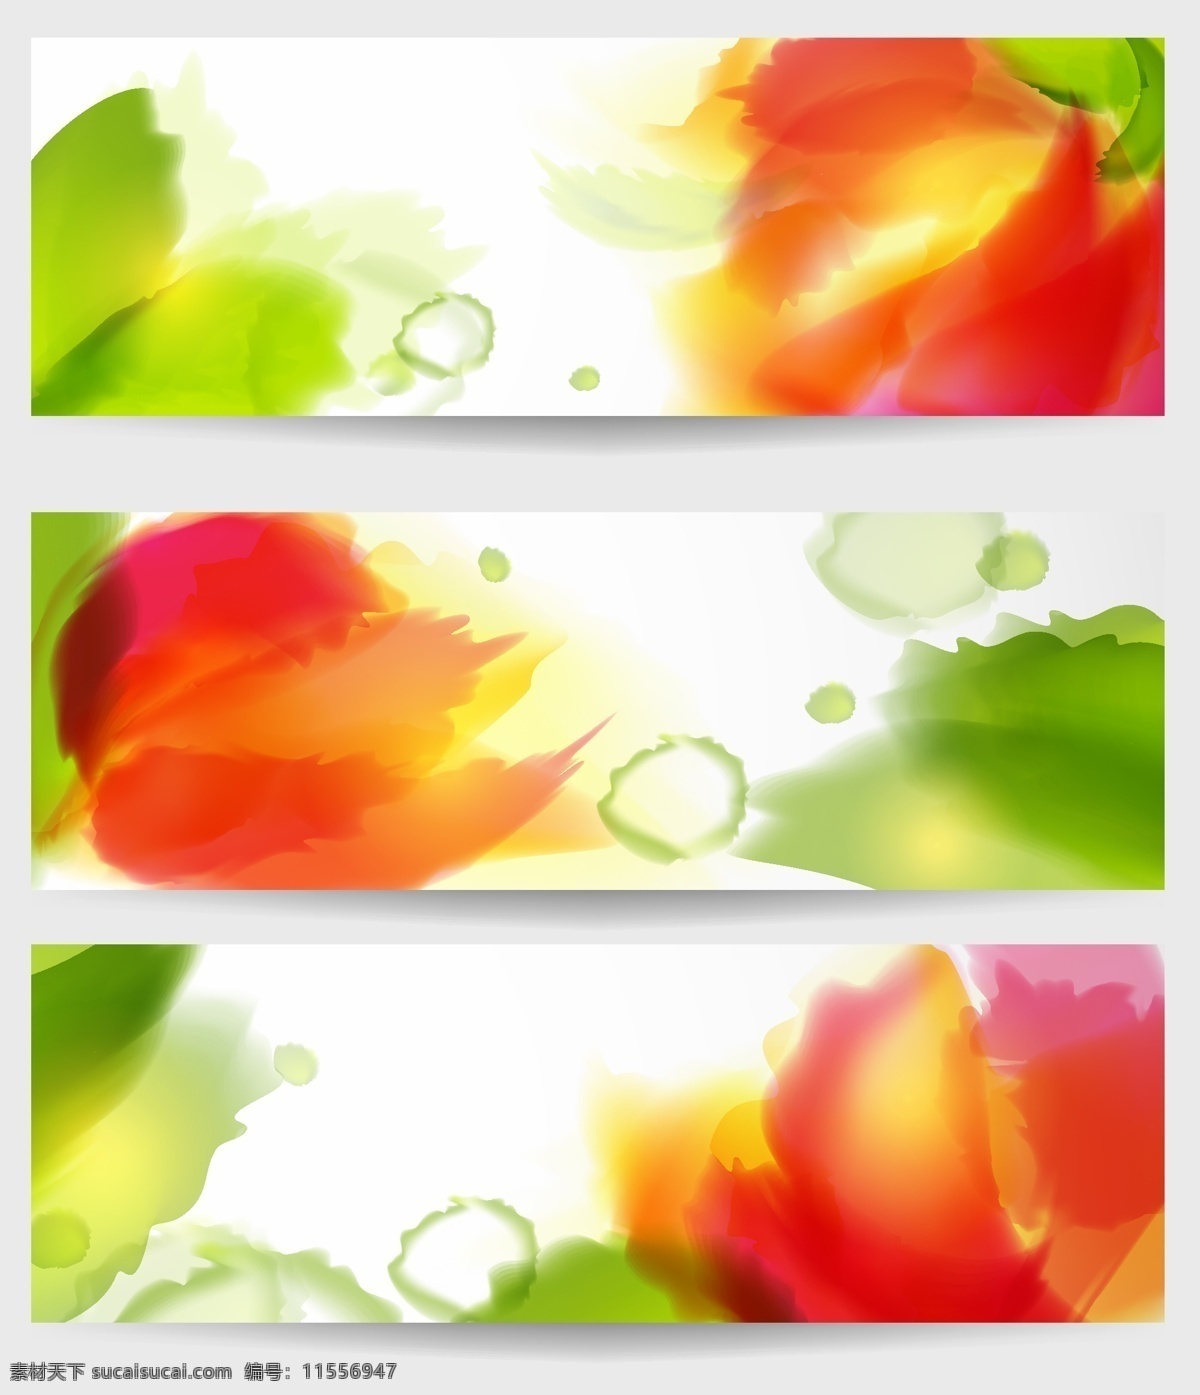 款 炫丽 朦胧 水彩 叠加 花朵 花瓣 3款 矢量装饰 背景素材 贴图纹理素材 底纹边框 背景底纹